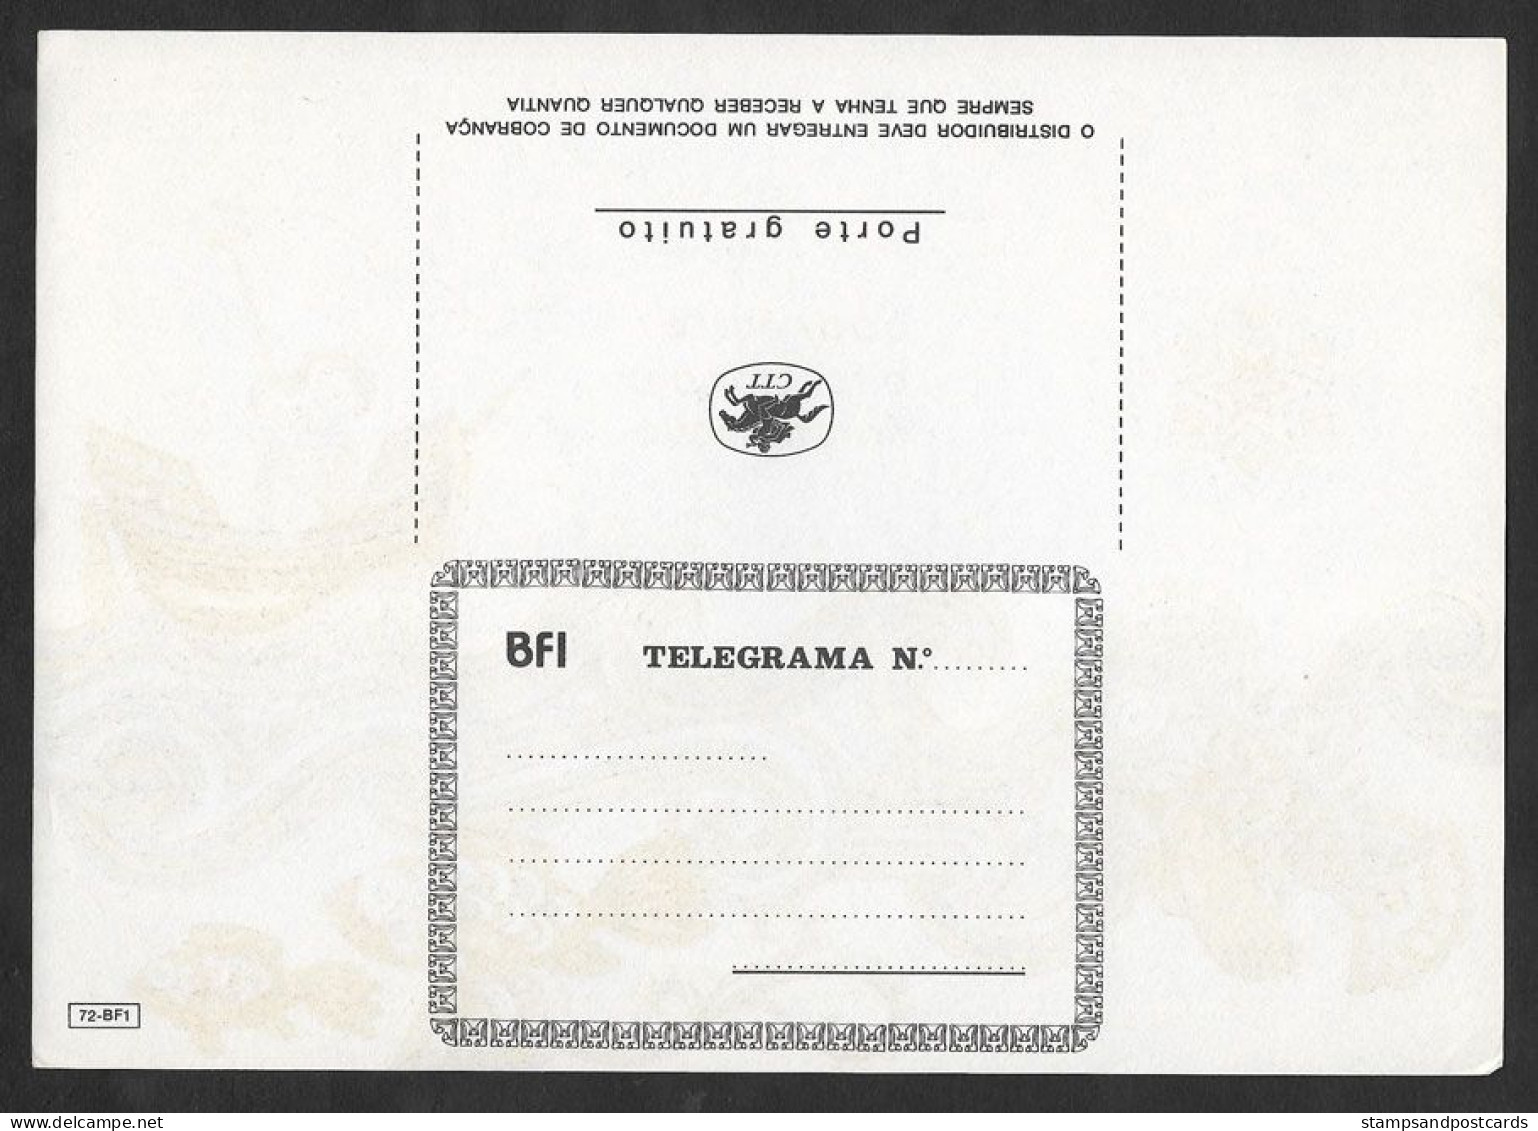 Portugal Télégramme Nouvelle Année Bateau Poisson Telegram New Year Ship Fish - Covers & Documents